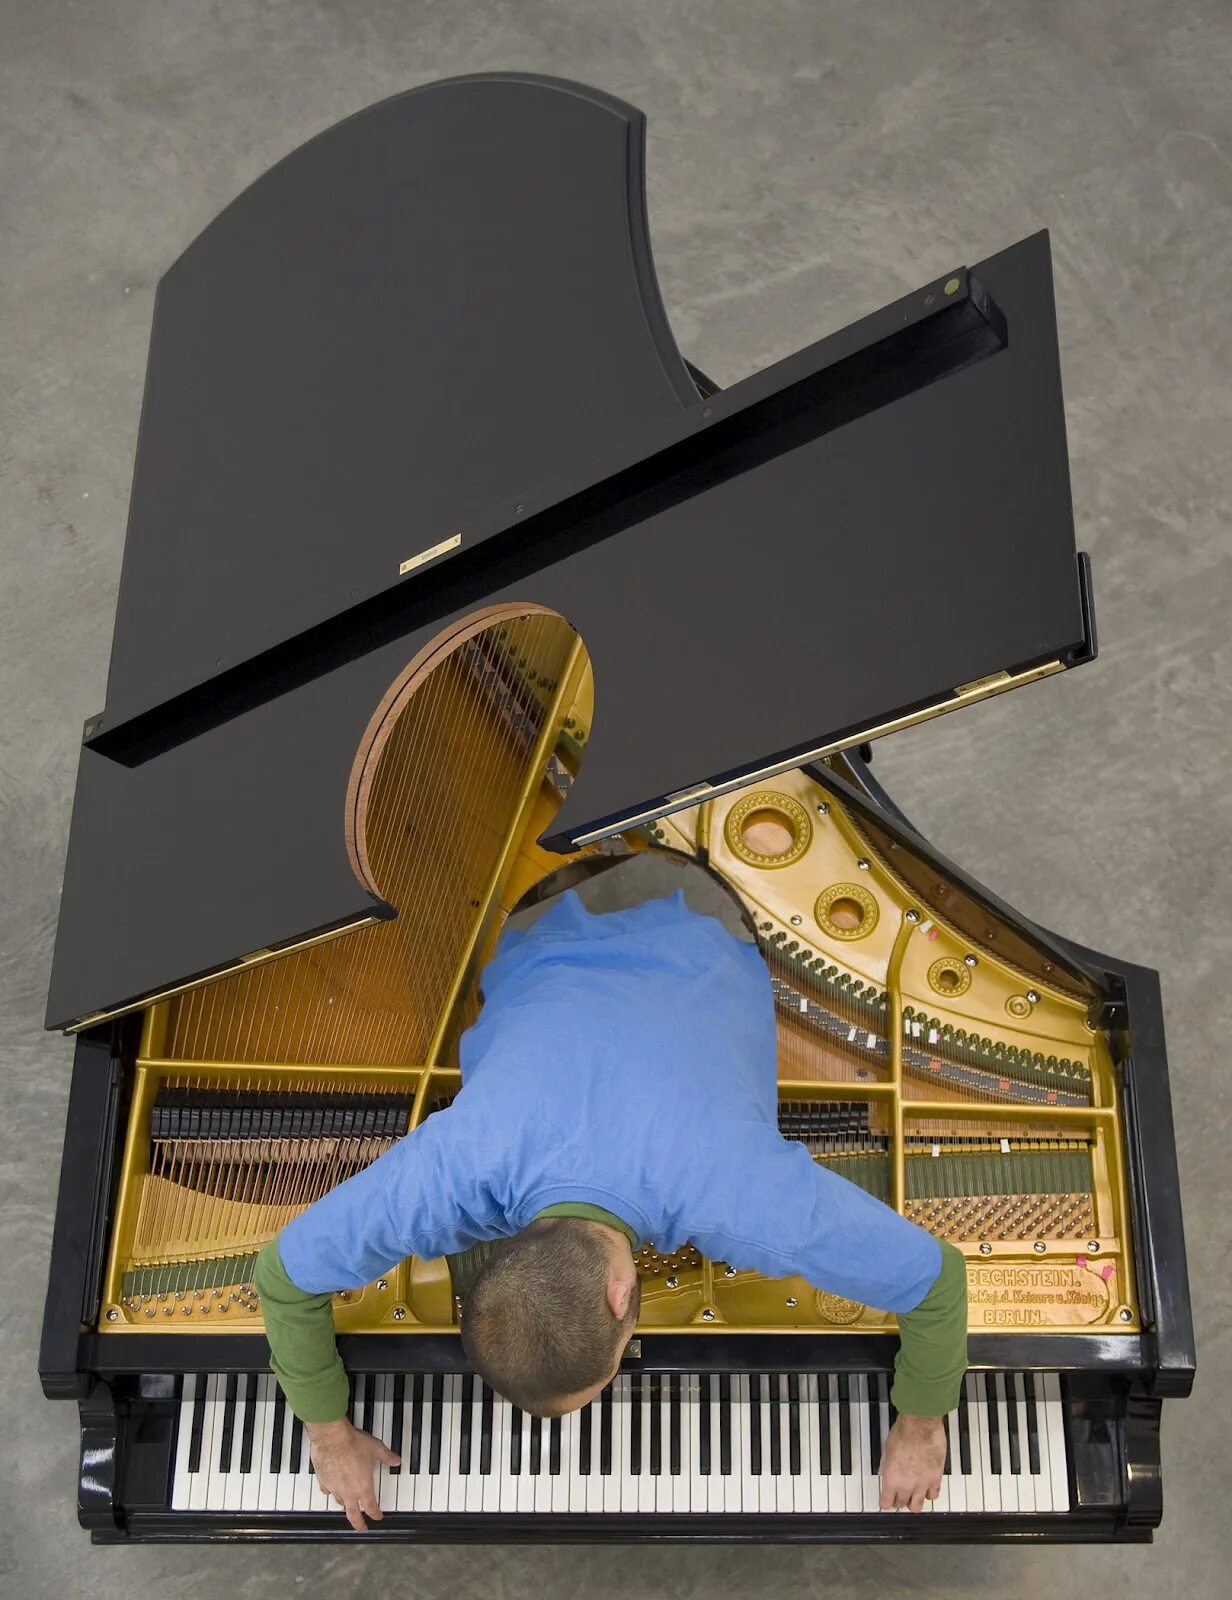 Аллора и Кальсадилья, "stop, Repair, prepare: variations on "Ode to Joy" for a prepared Piano" (2008). Аллора и Кальсадилья. Инсталляция пианино. Перфоманс Аллора и Кальсадилья.